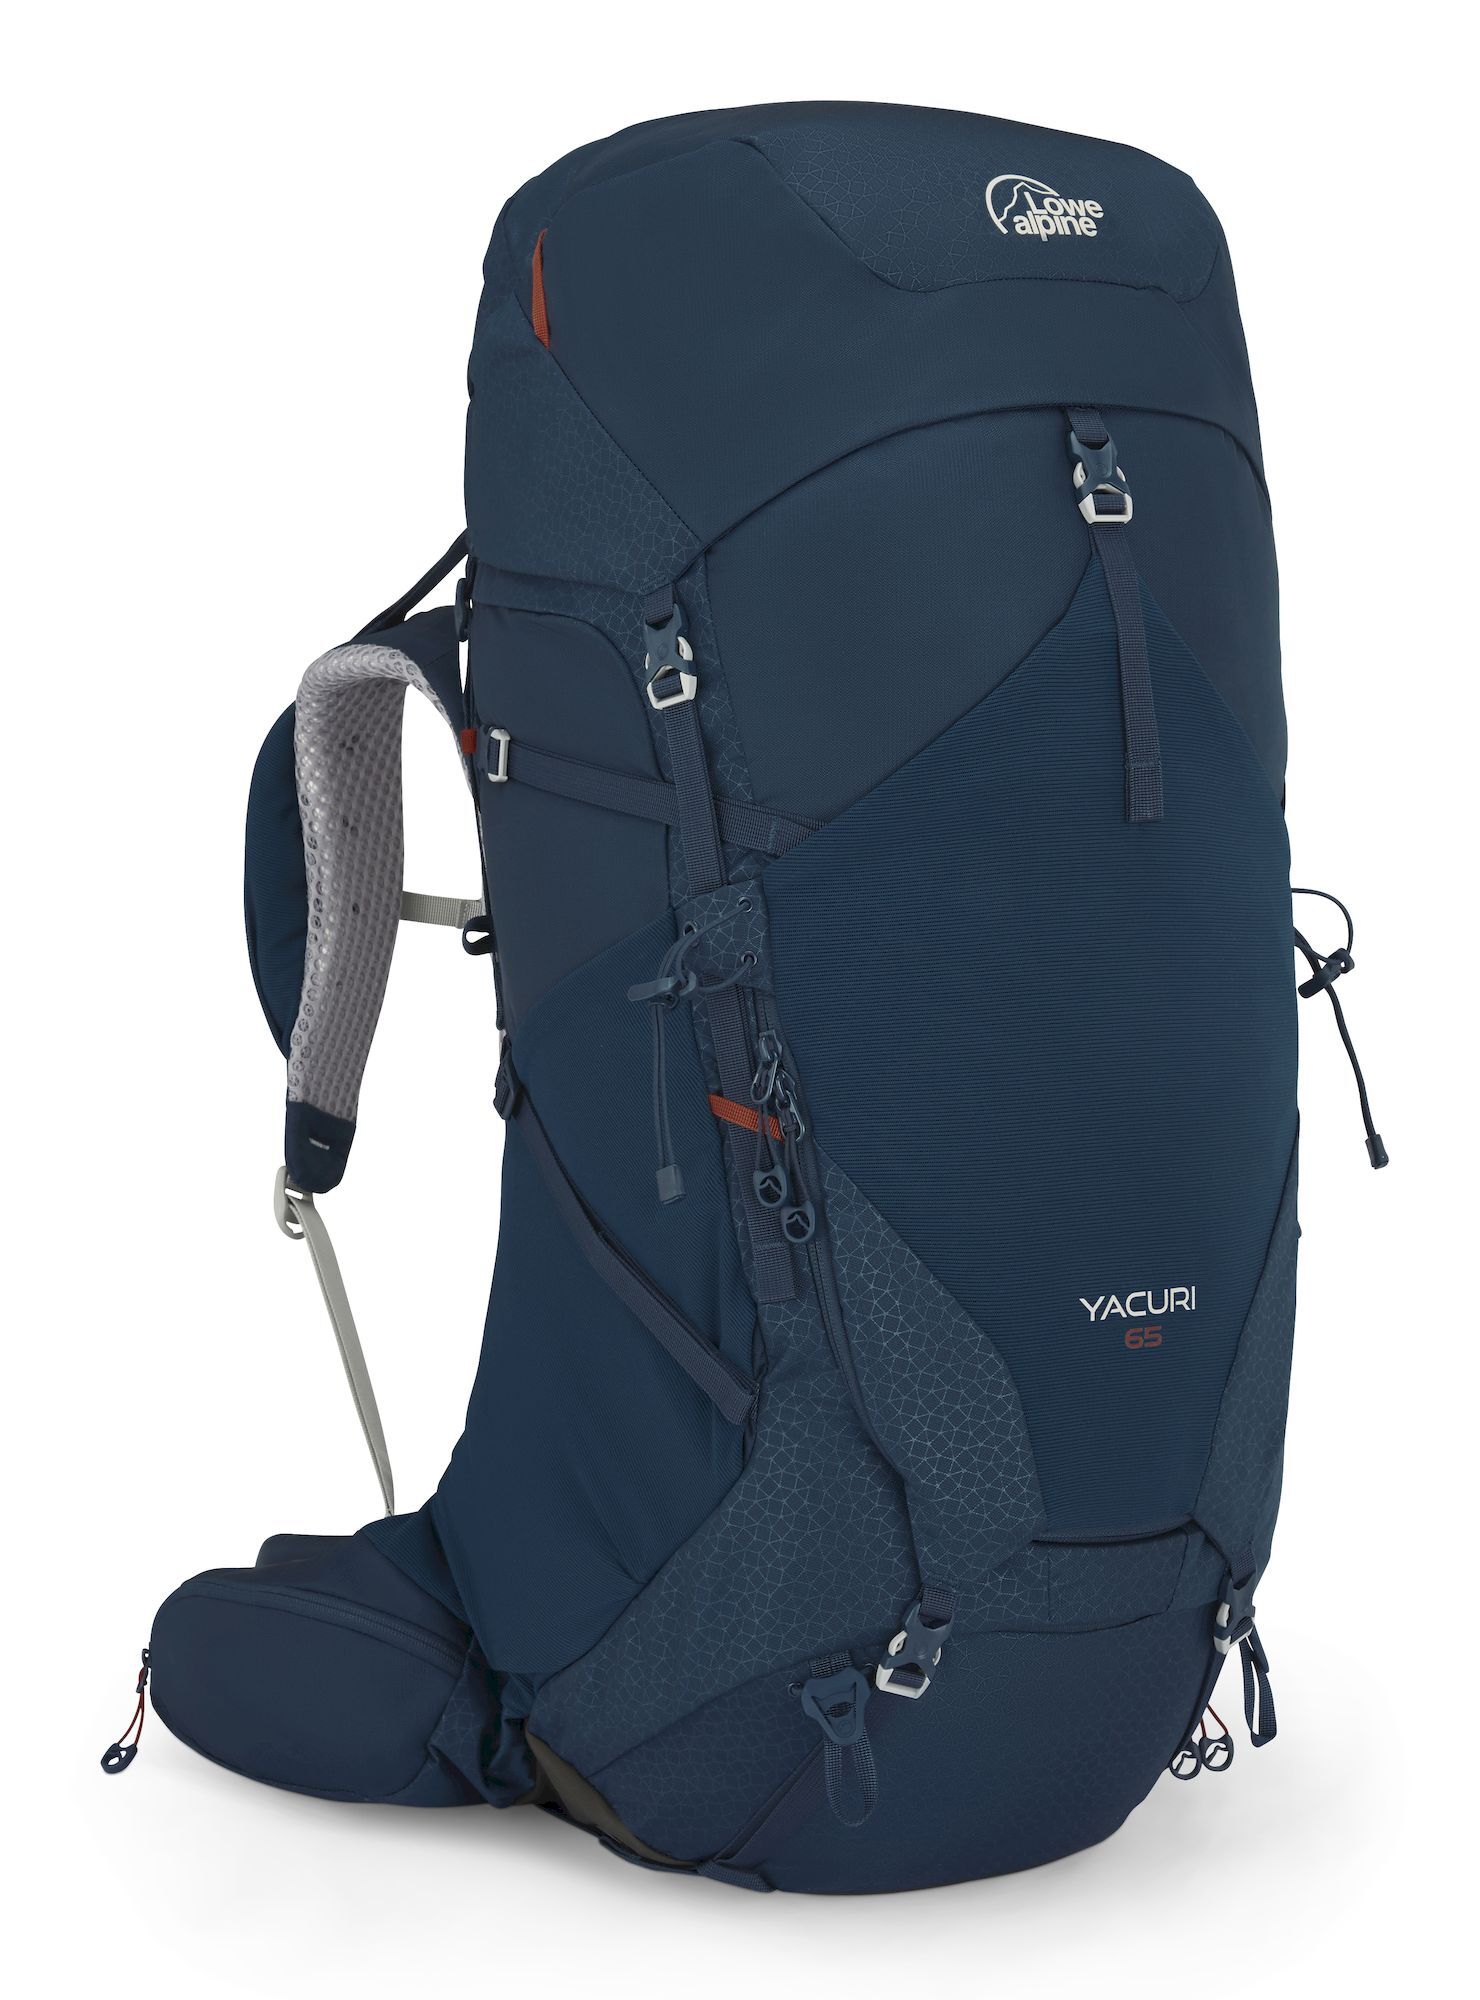 Lowe Alpine Yacuri 65 - Hiking backpack - Men's | Hardloop